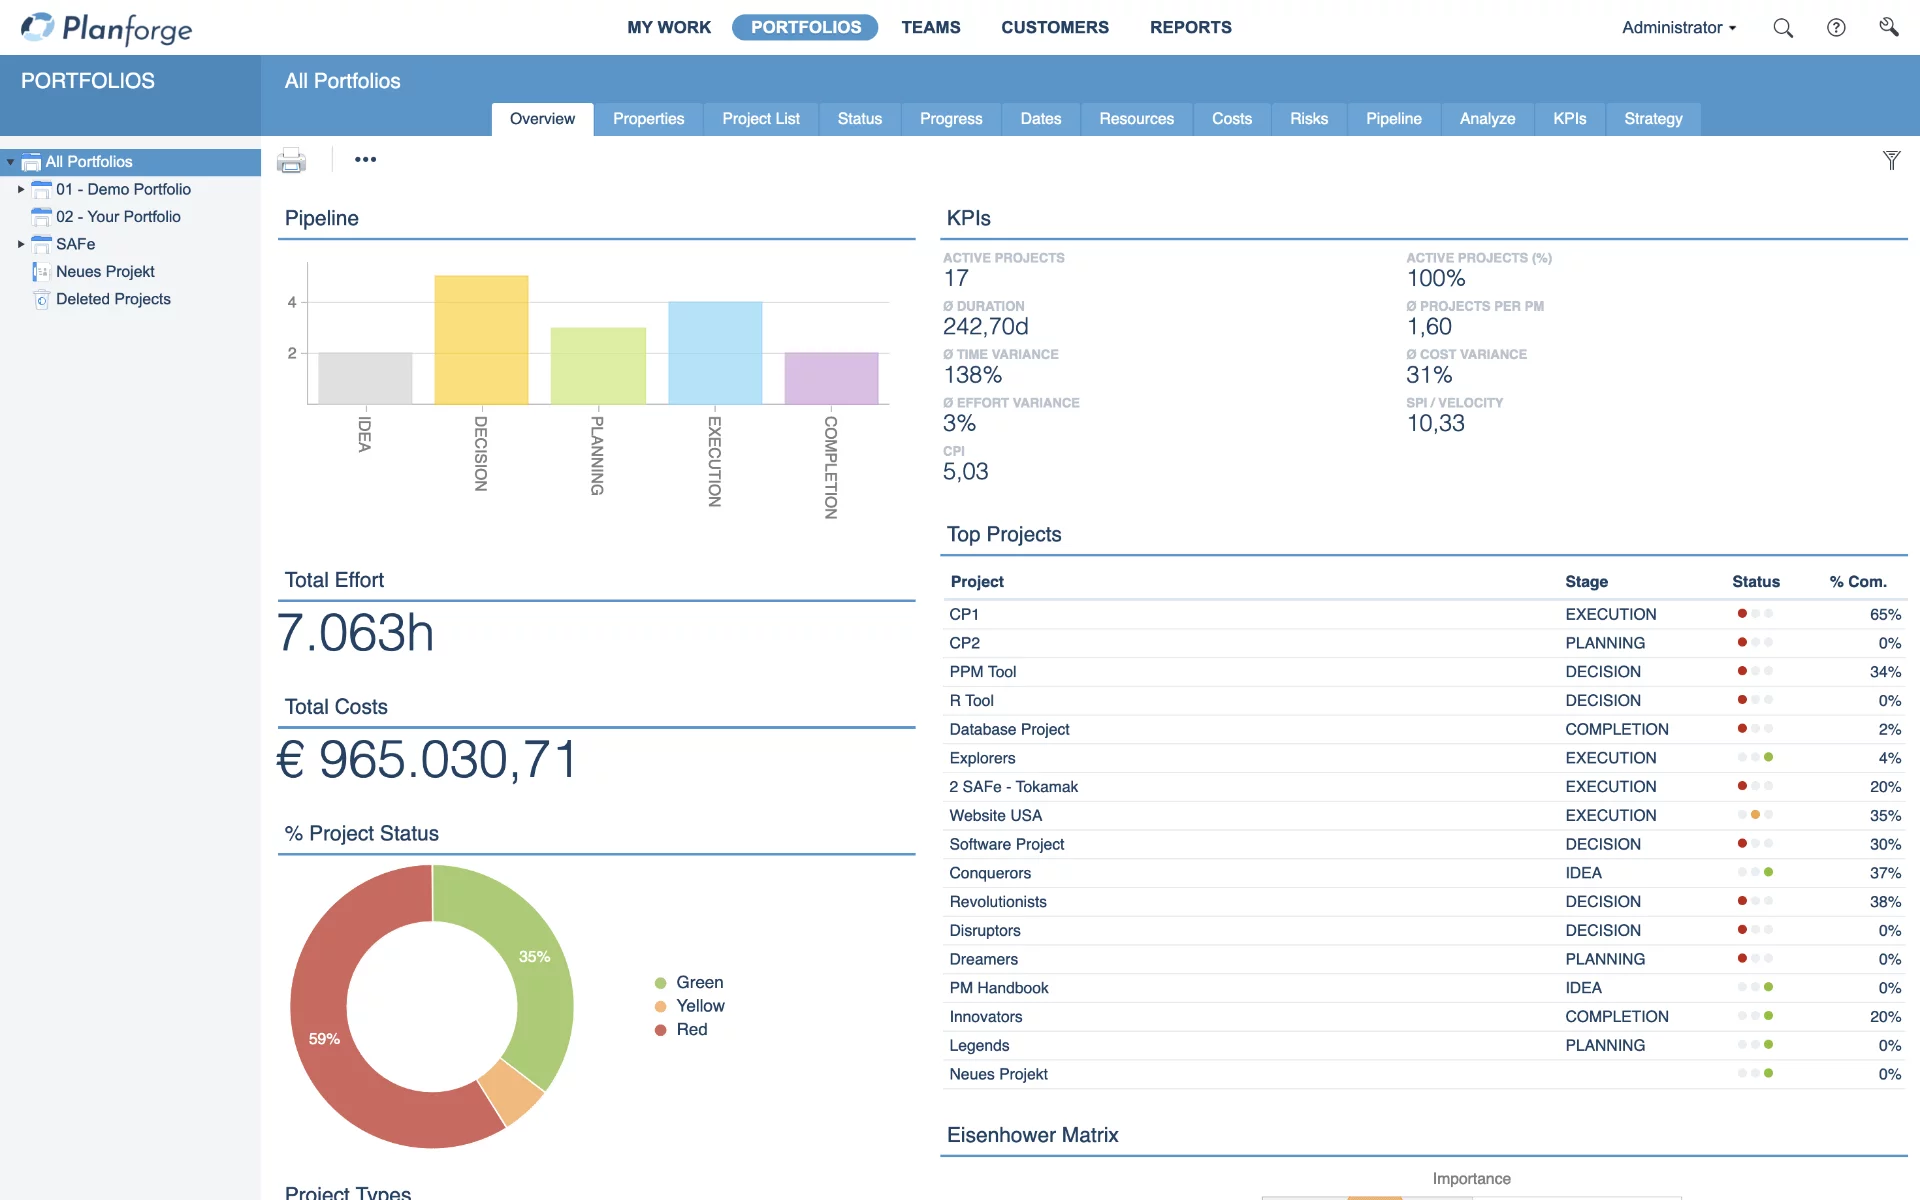 Portfolio Management Dashboard Portfolio Analysis Software by Planforge